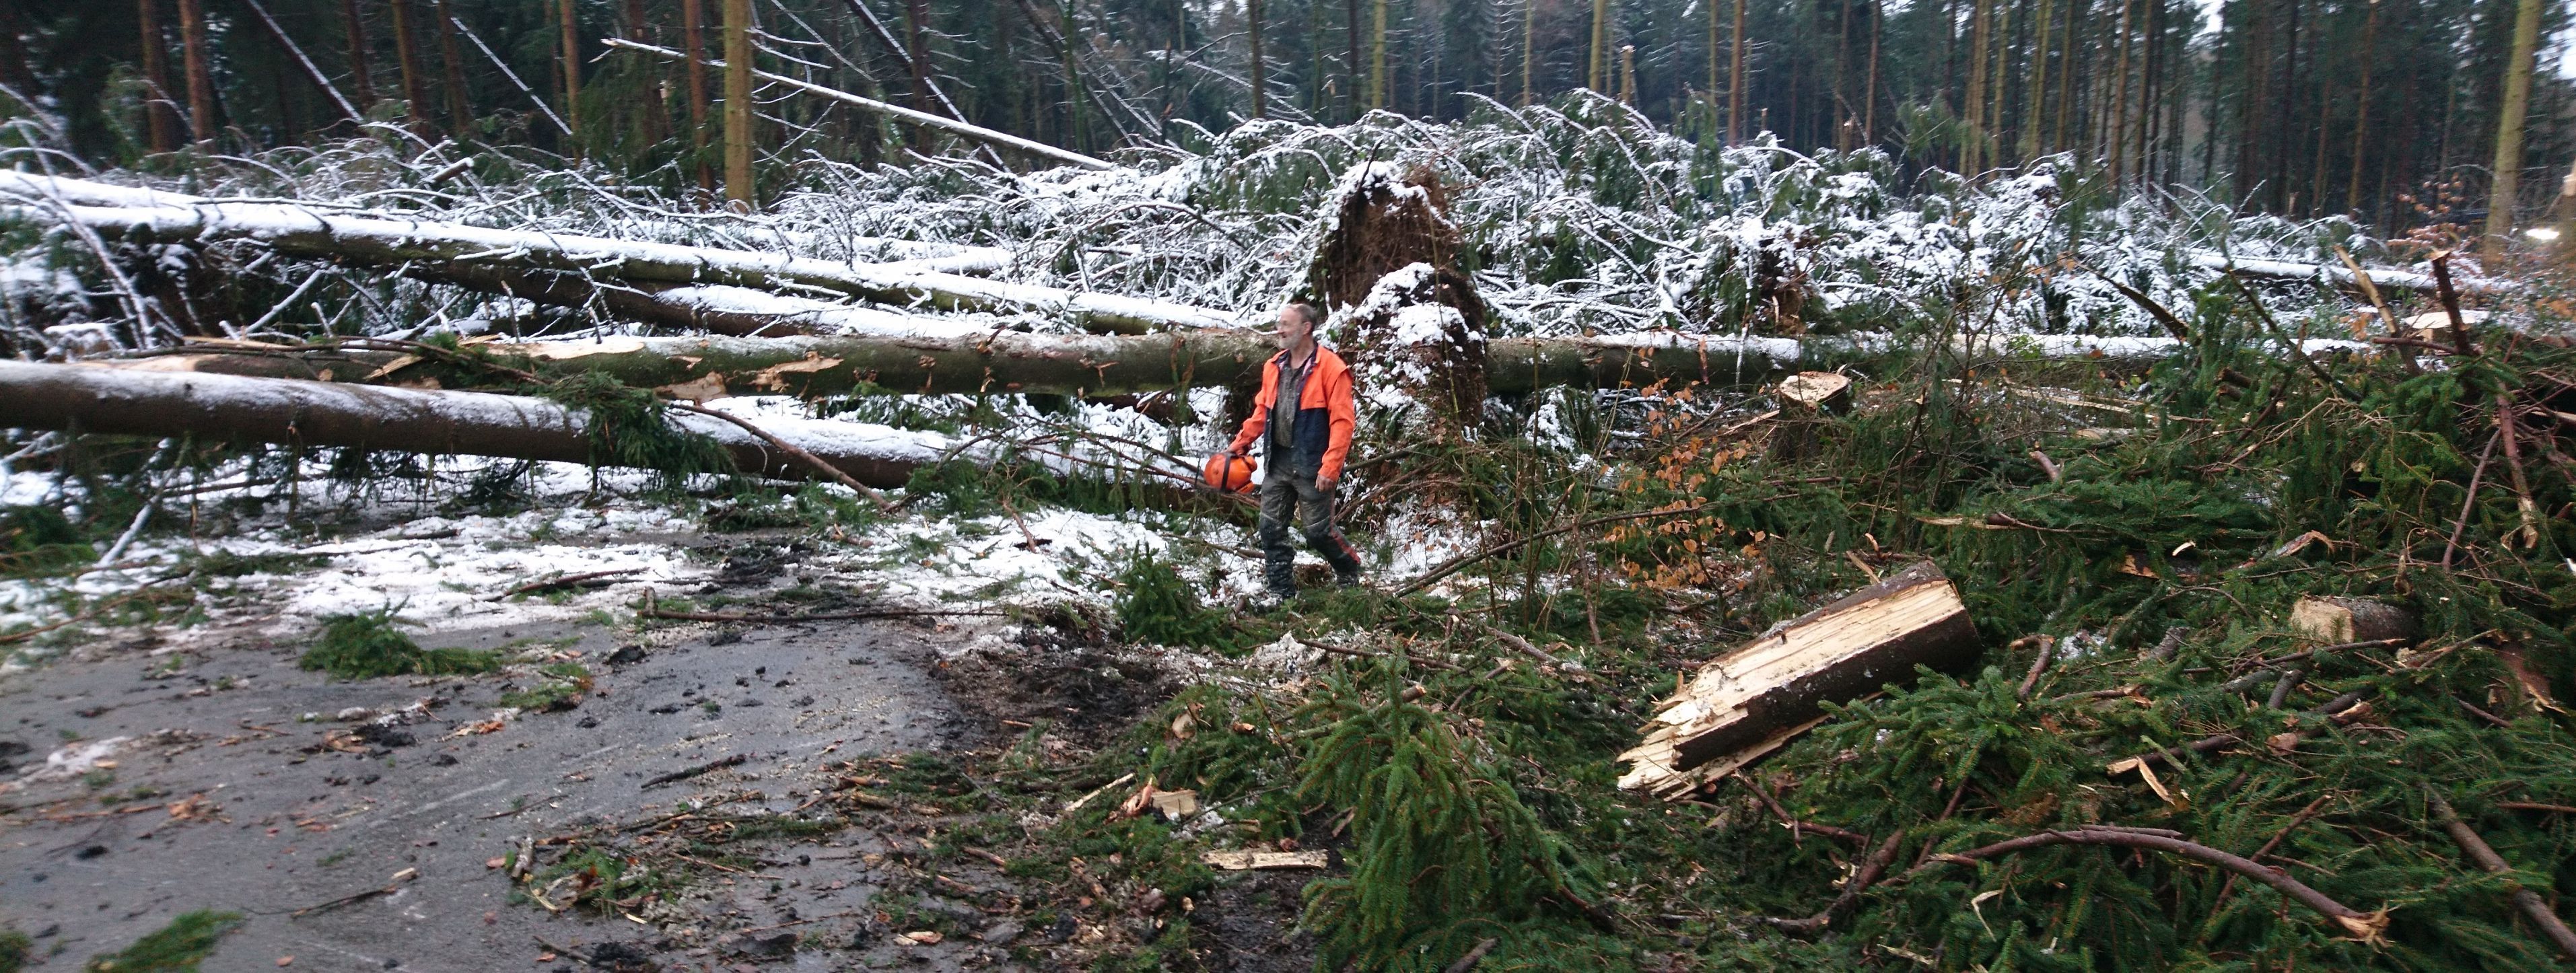 Der Orkan hat eine breite Schneise in den Wald gezogen. Zu sehen sind umgestürzte Fichten, davor steht ein Waldarbeiter.